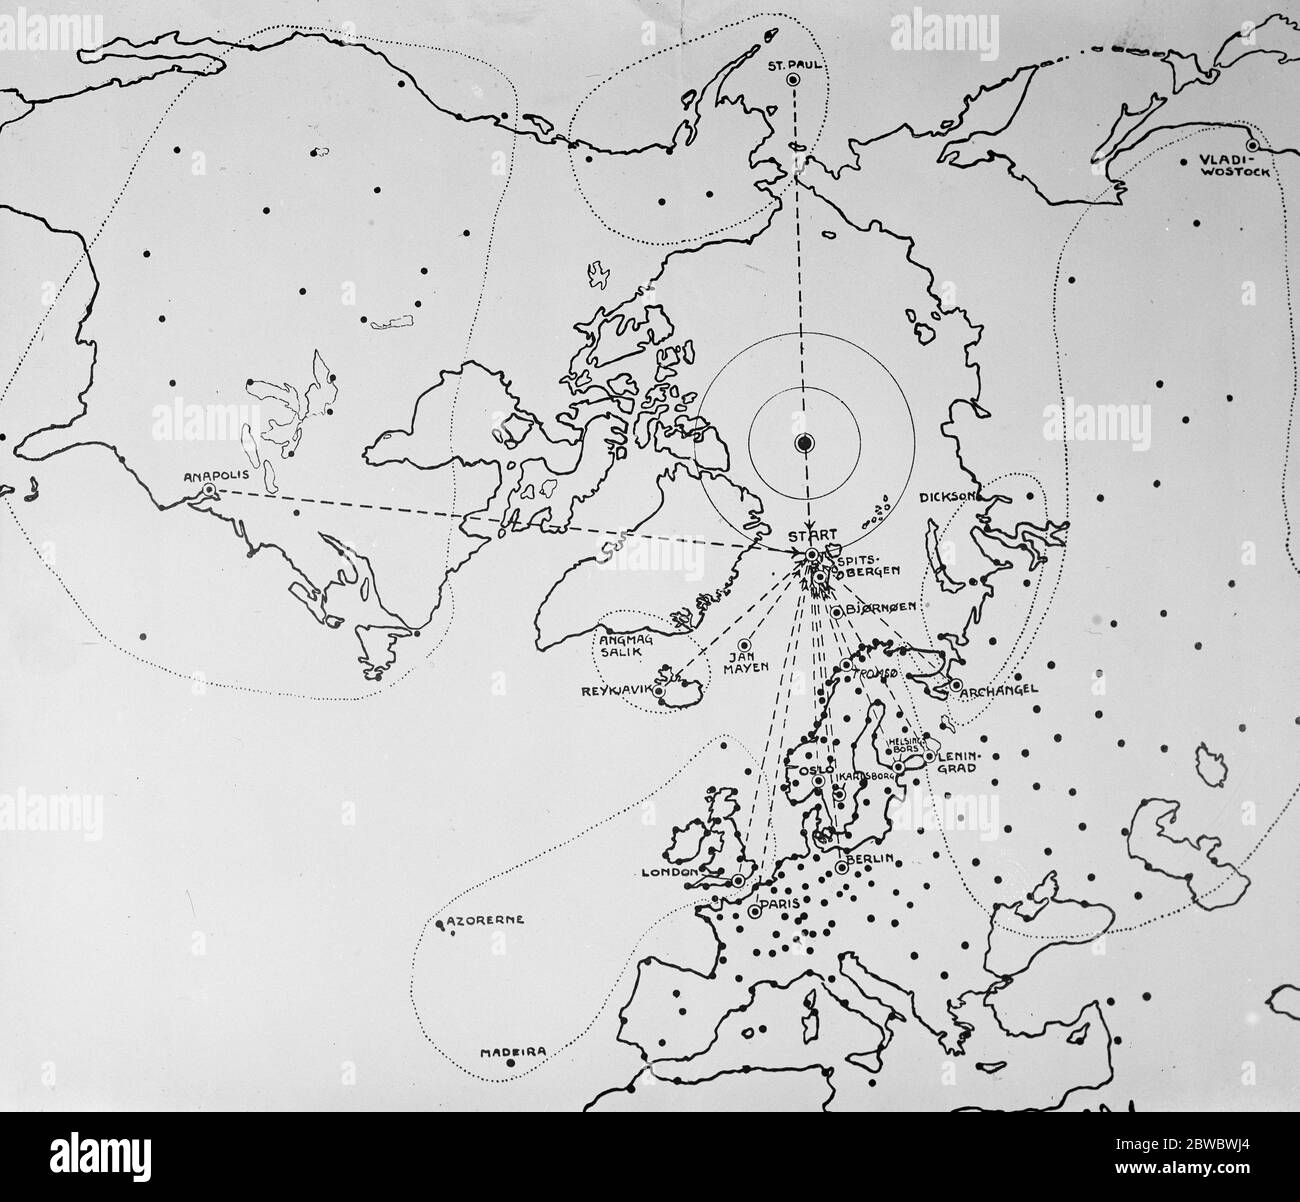 Problèmes météorologiques du vol polaire des centilectures de rapports quotidiens par le sans fil seront utilisés comme base pour une prévision des conditions météorologiques sur le Cap polaire , afin de déterminer quand le temps est suffisamment stable pour permettre le vol polaire . Comme le montre ce diagramme , l'expédition recevra des avis météorologiques de la grande partie de l'hémisphère nord le 14 avril 1925 Banque D'Images